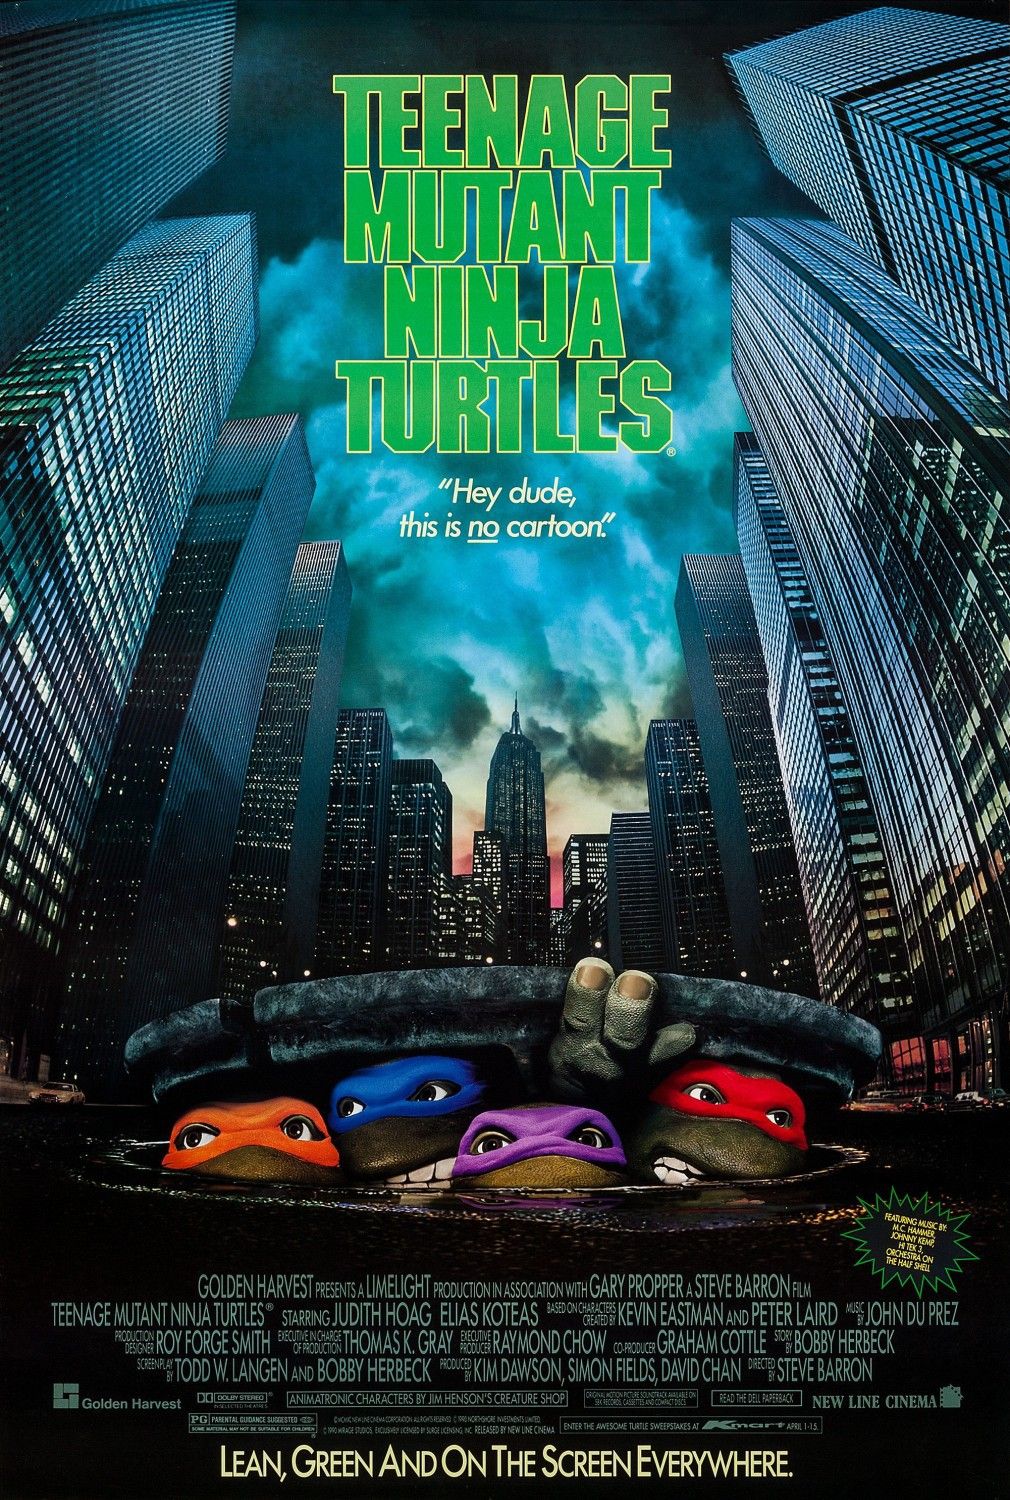 Teenage Mutant Ninja Turtles 1990 Movie Poster-1